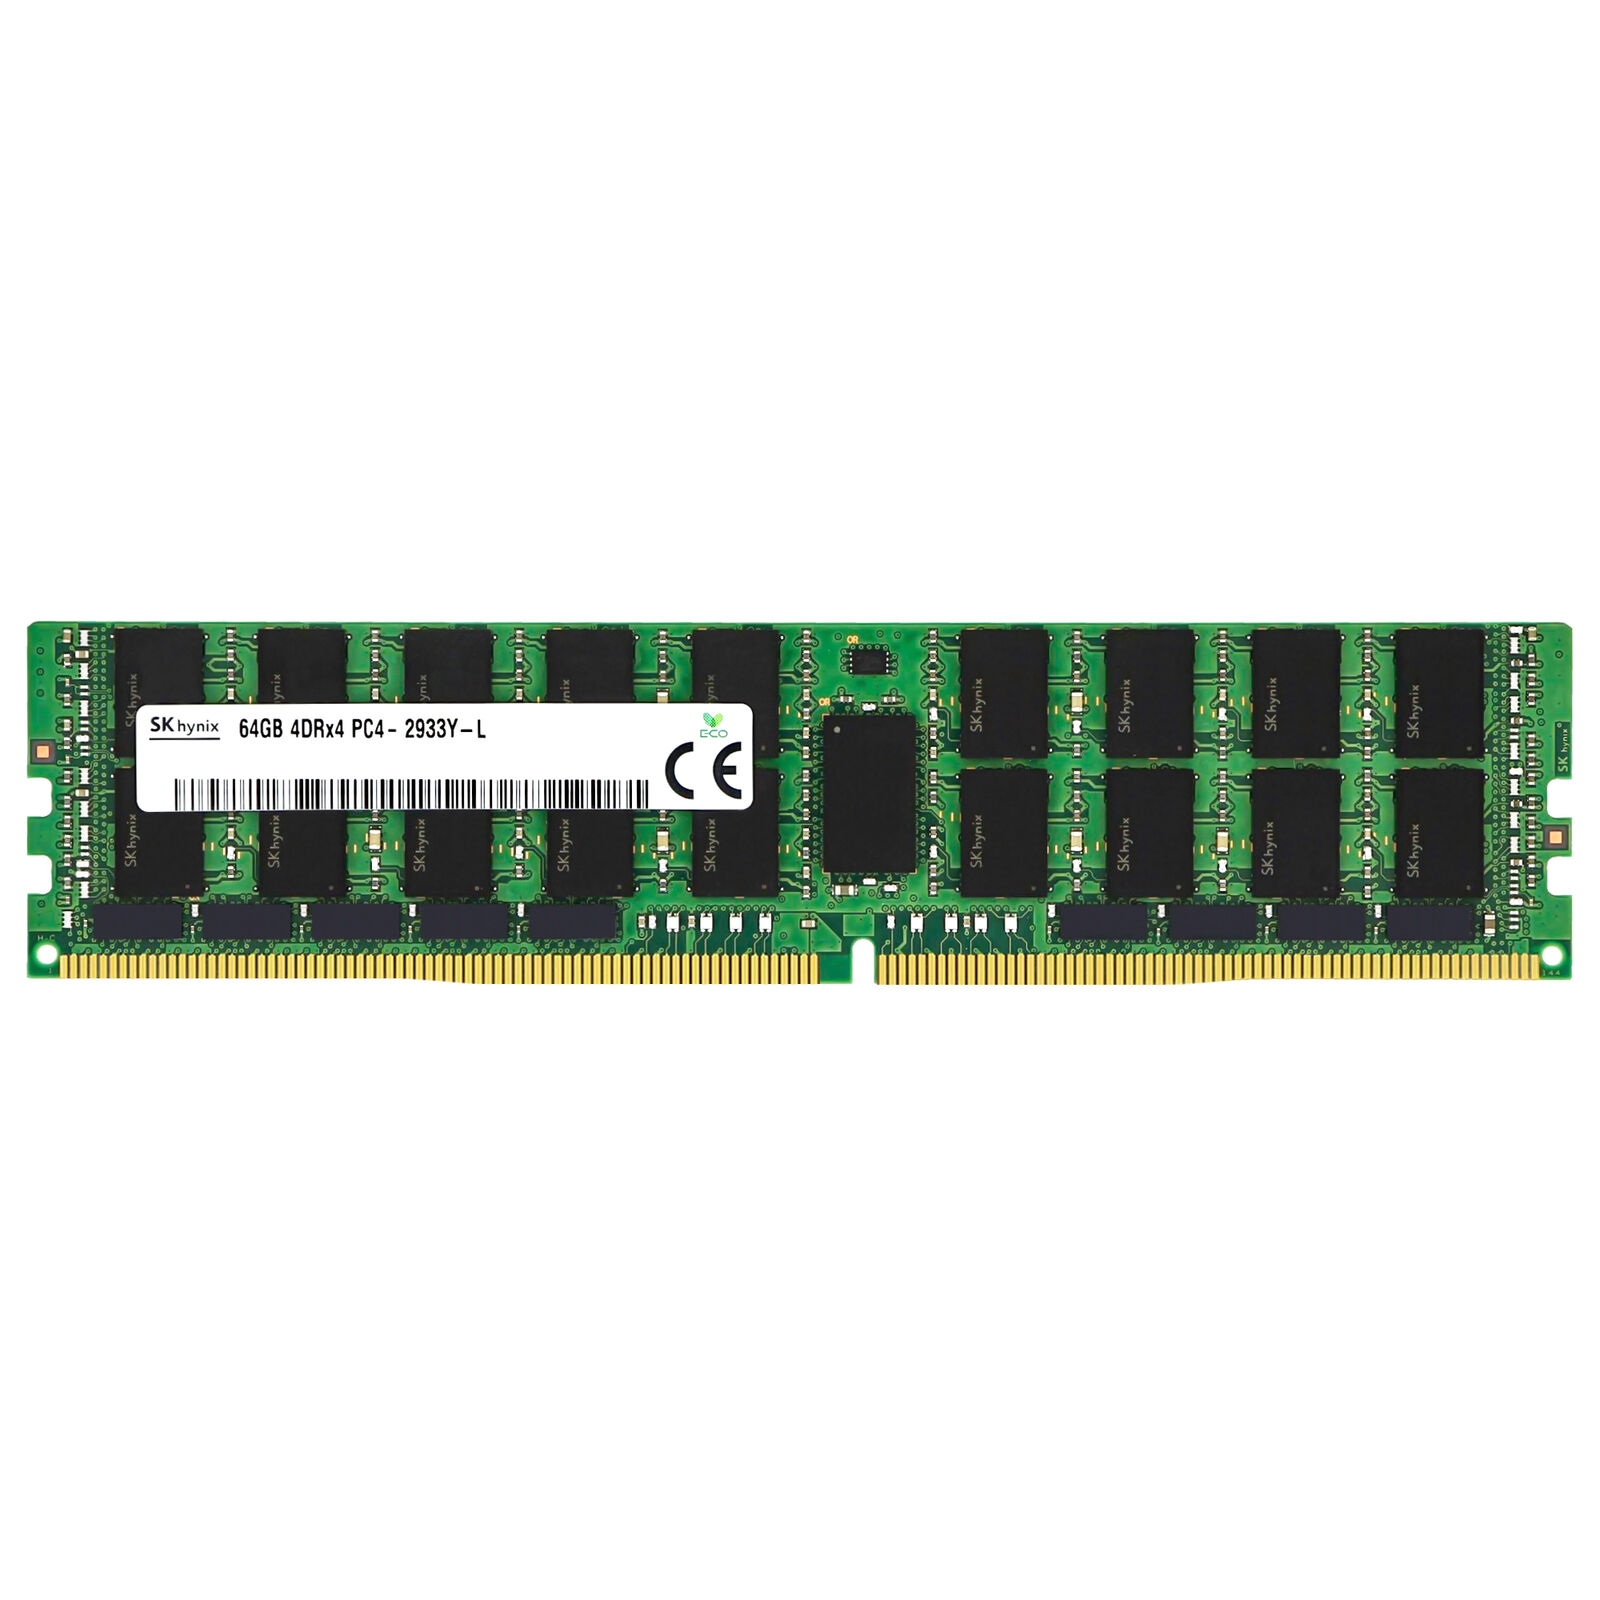 Hynix 64GB 4DRx4 PC4-2933Y LRDIMM DDR4-23400 ECC Load Reduced Server Memory RAM